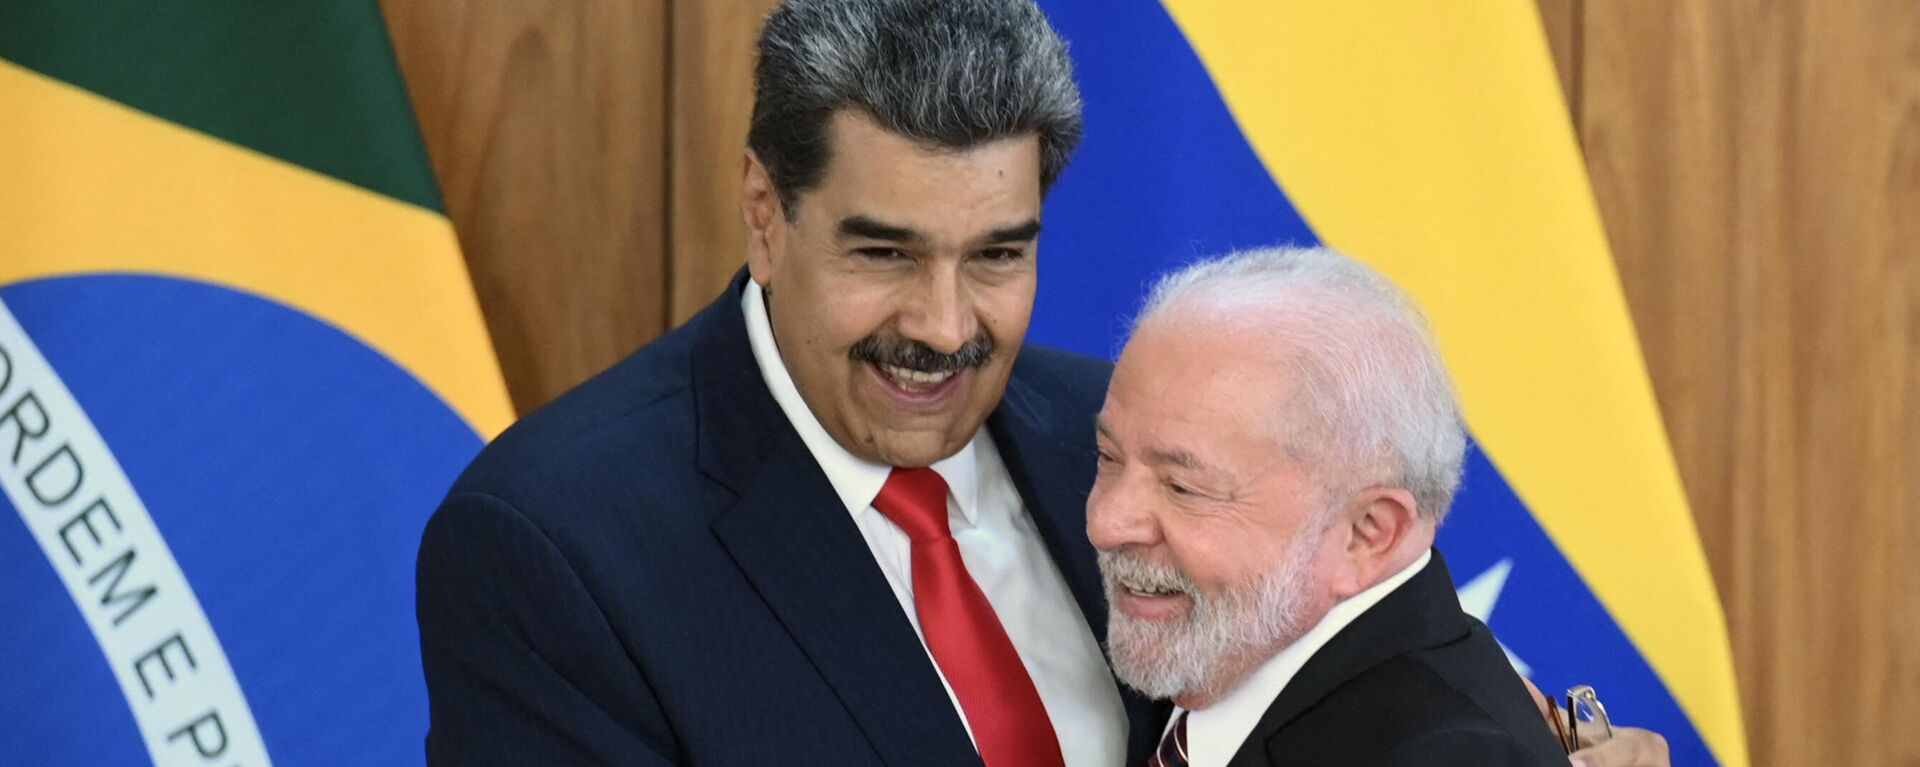 O presidente da Venezuela, Nicolás Maduro (à esquerda), e o presidente do Brasil, Luiz Inácio Lula da Silva (à direita), se cumprimentam após coletiva de imprensa conjunta no Palácio do Planalto, em Brasília, em 29 de maio de 2023 - Sputnik Brasil, 1920, 29.05.2023